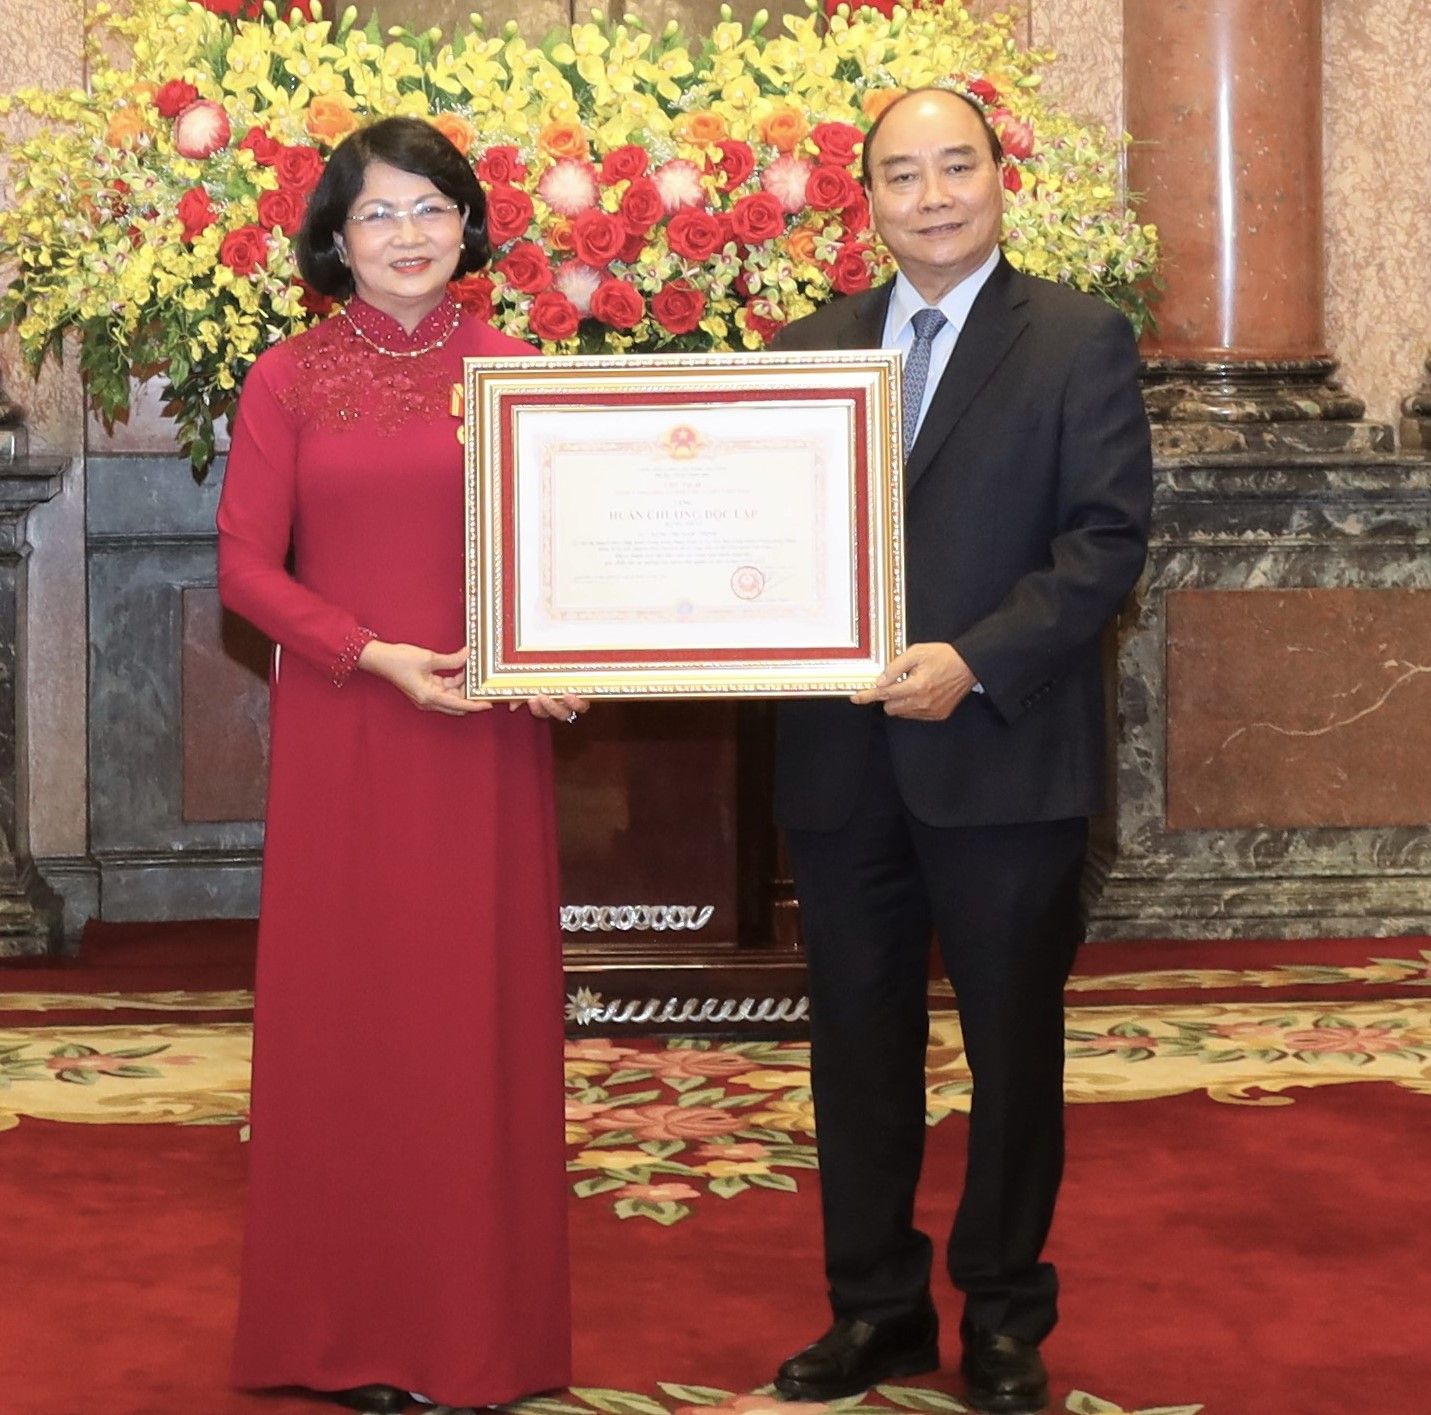 Nguyên Phó Chủ tịch nước Đặng Thị Ngọc Thịnh nhận Huân chương và quyết định nghỉ hưu - Ảnh 1.